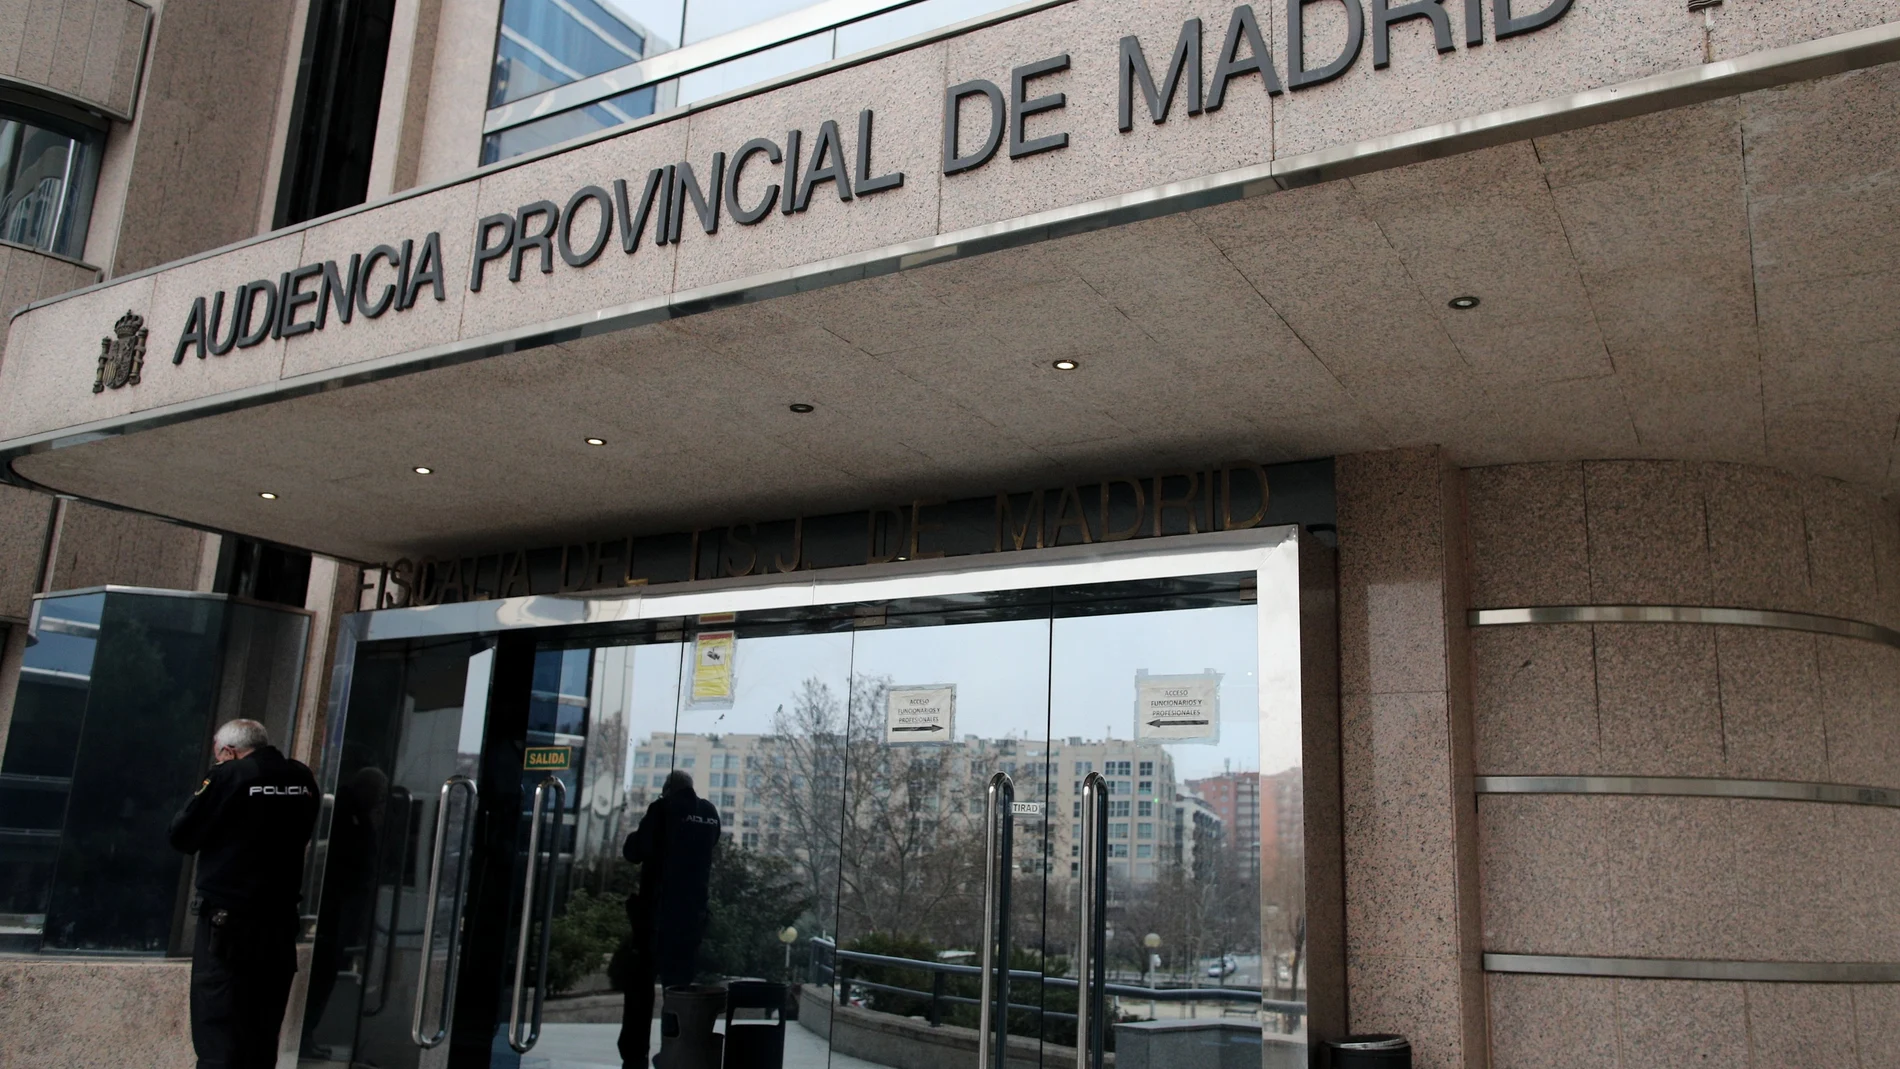 Imagen de la Audiencia Provincial de Madrid